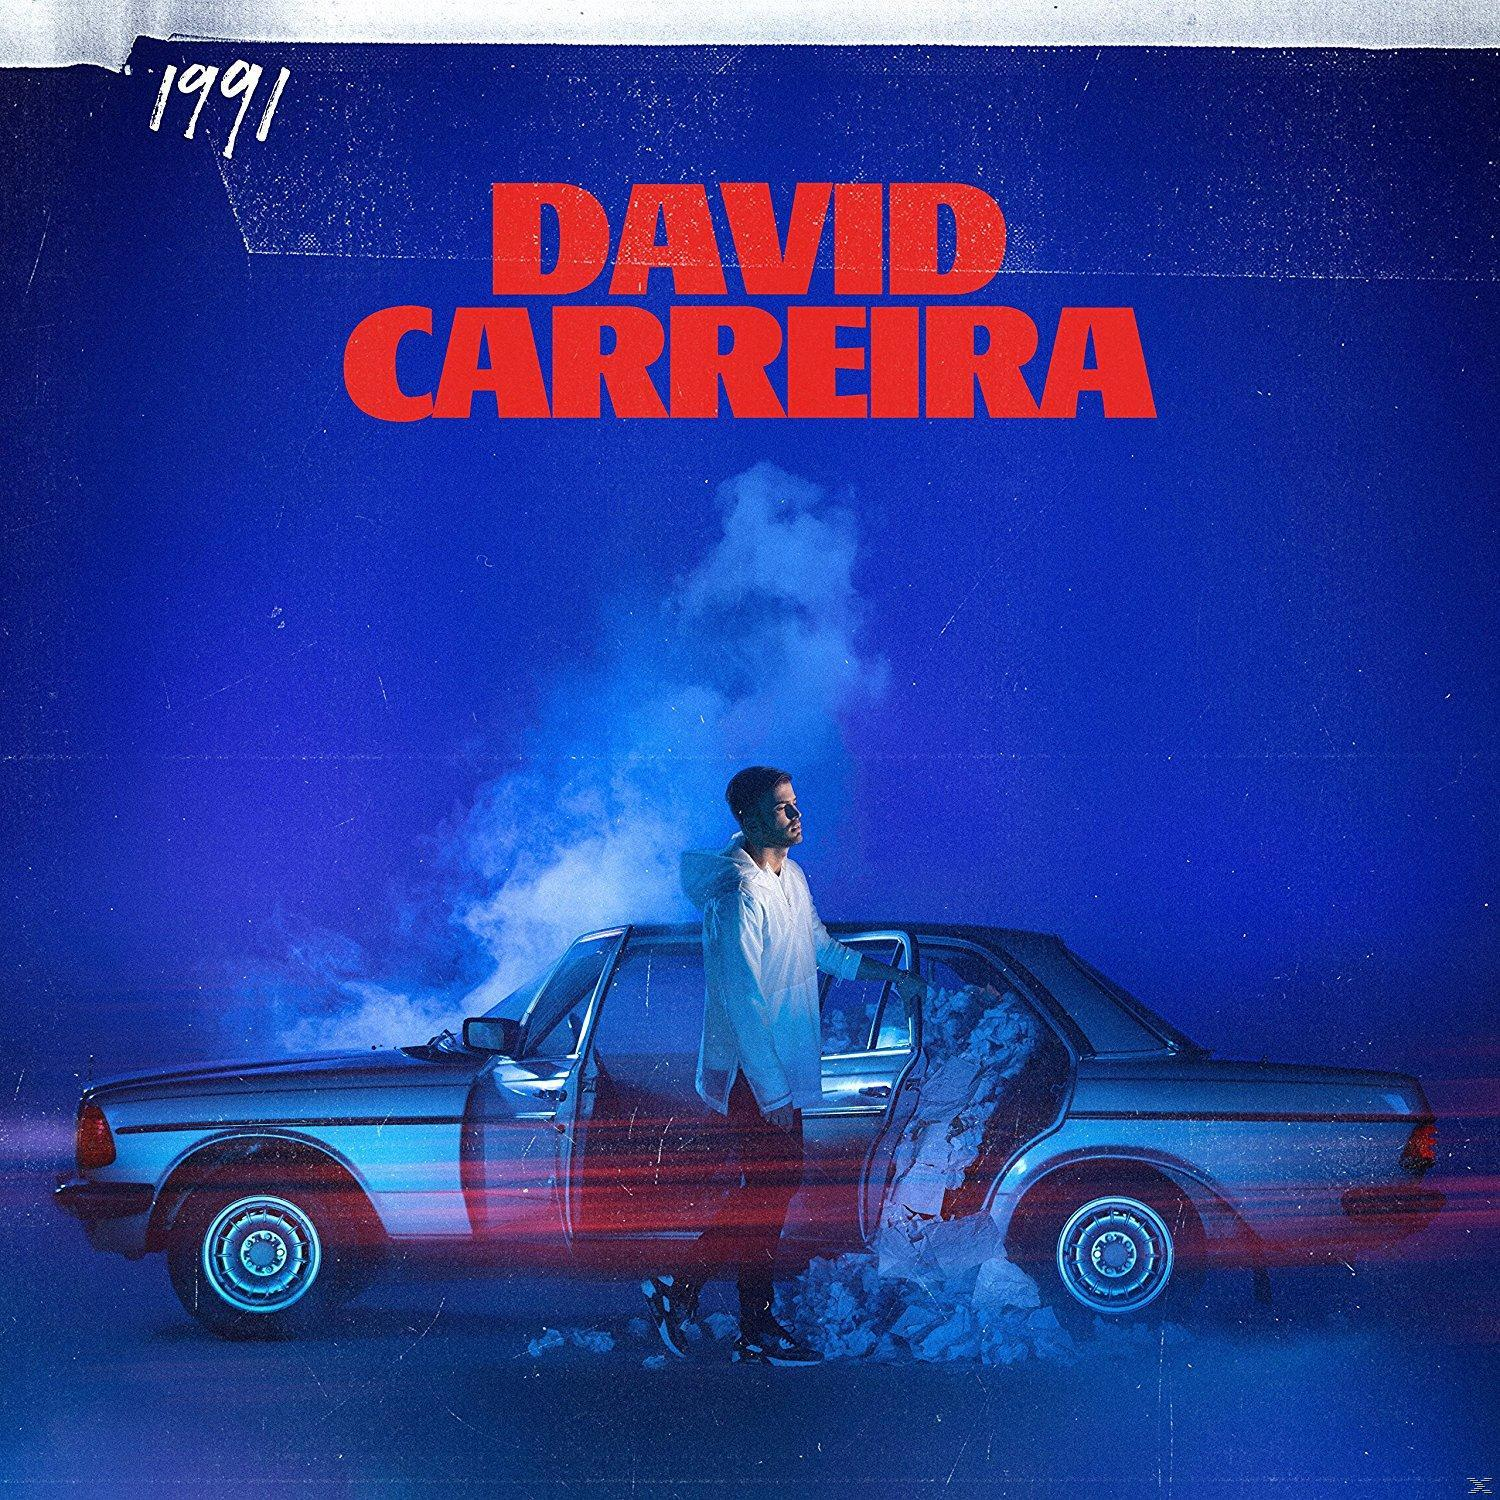 David Carreira - 1991 (CD) 